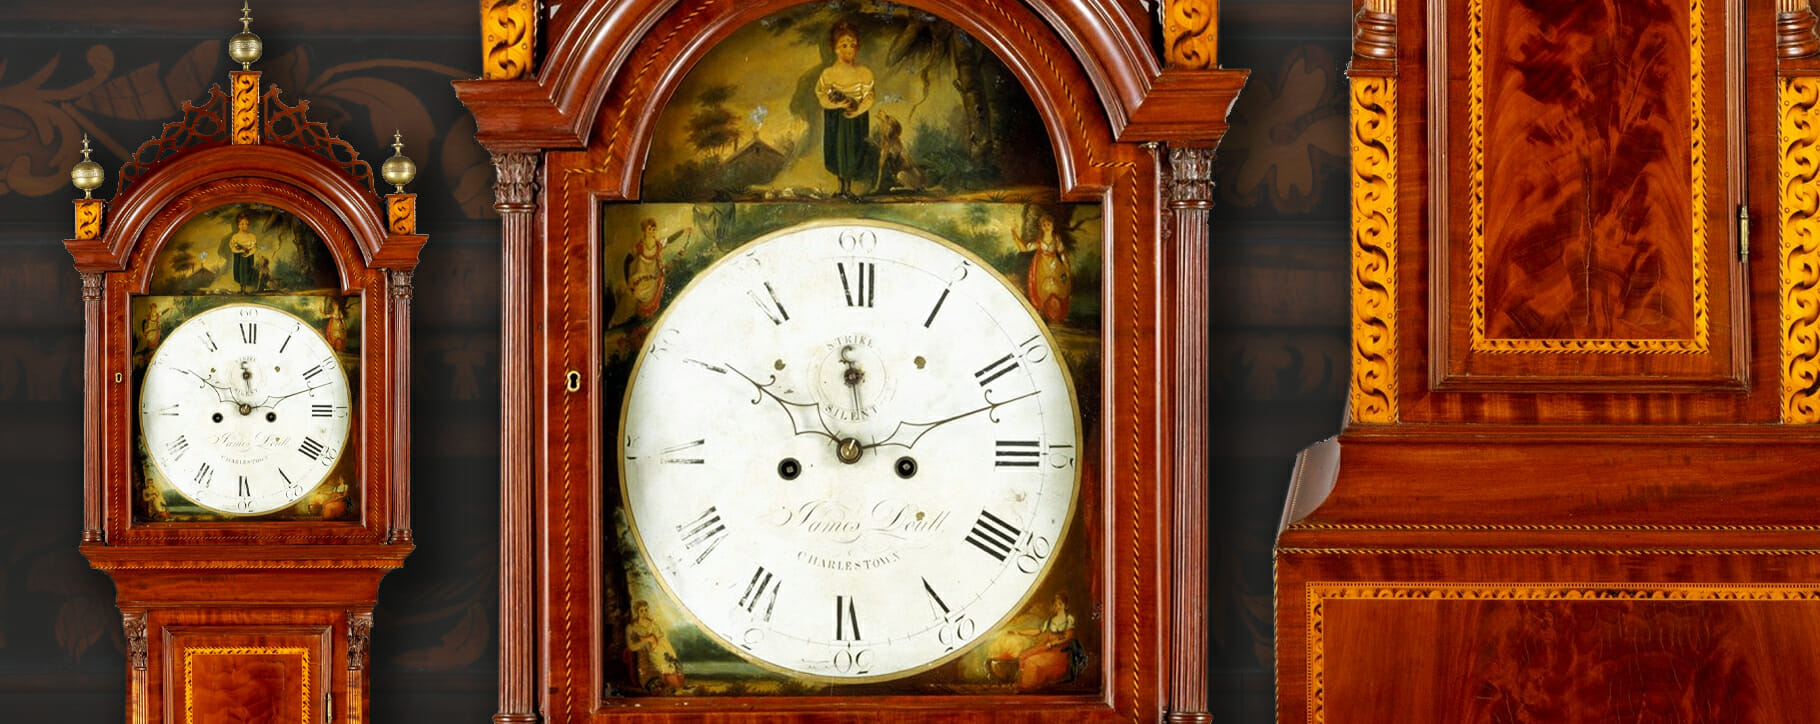 Regency painted dial clock